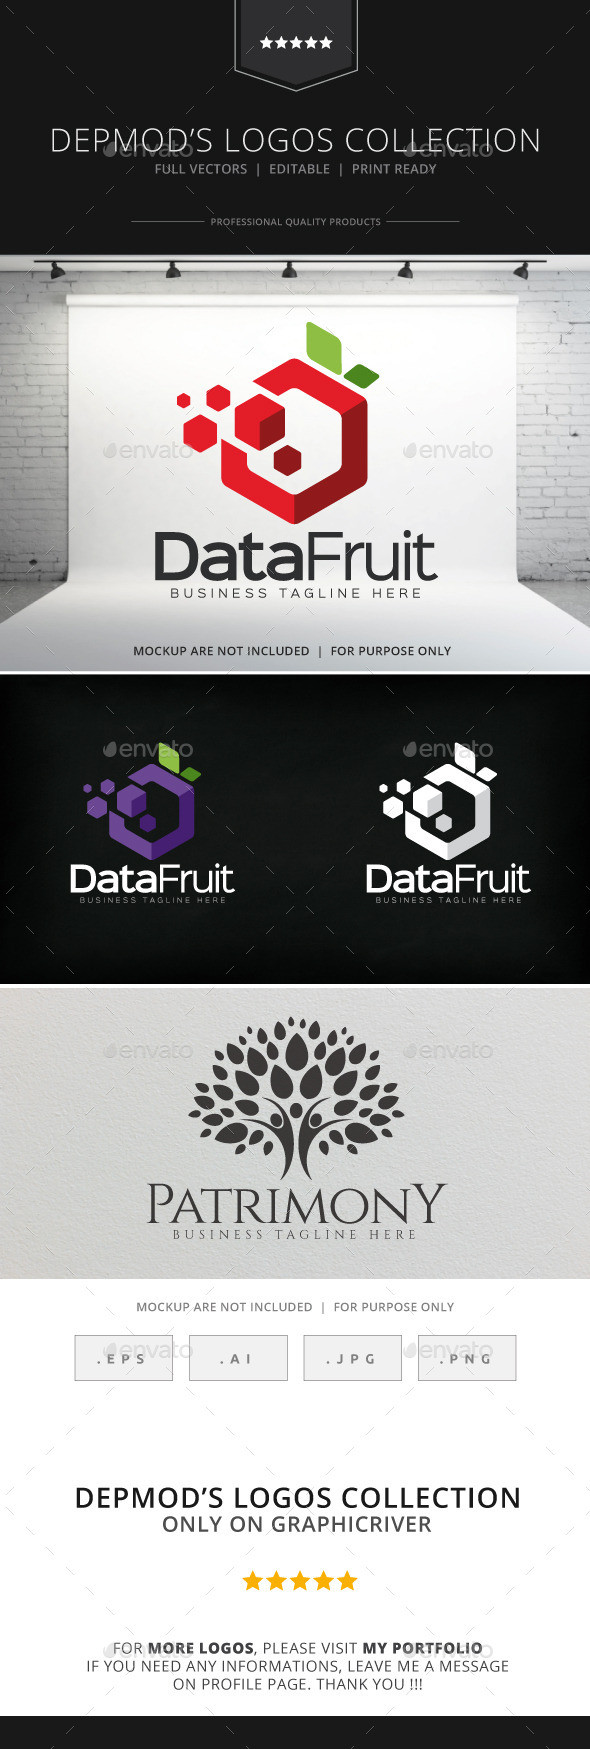 Data fruit logo